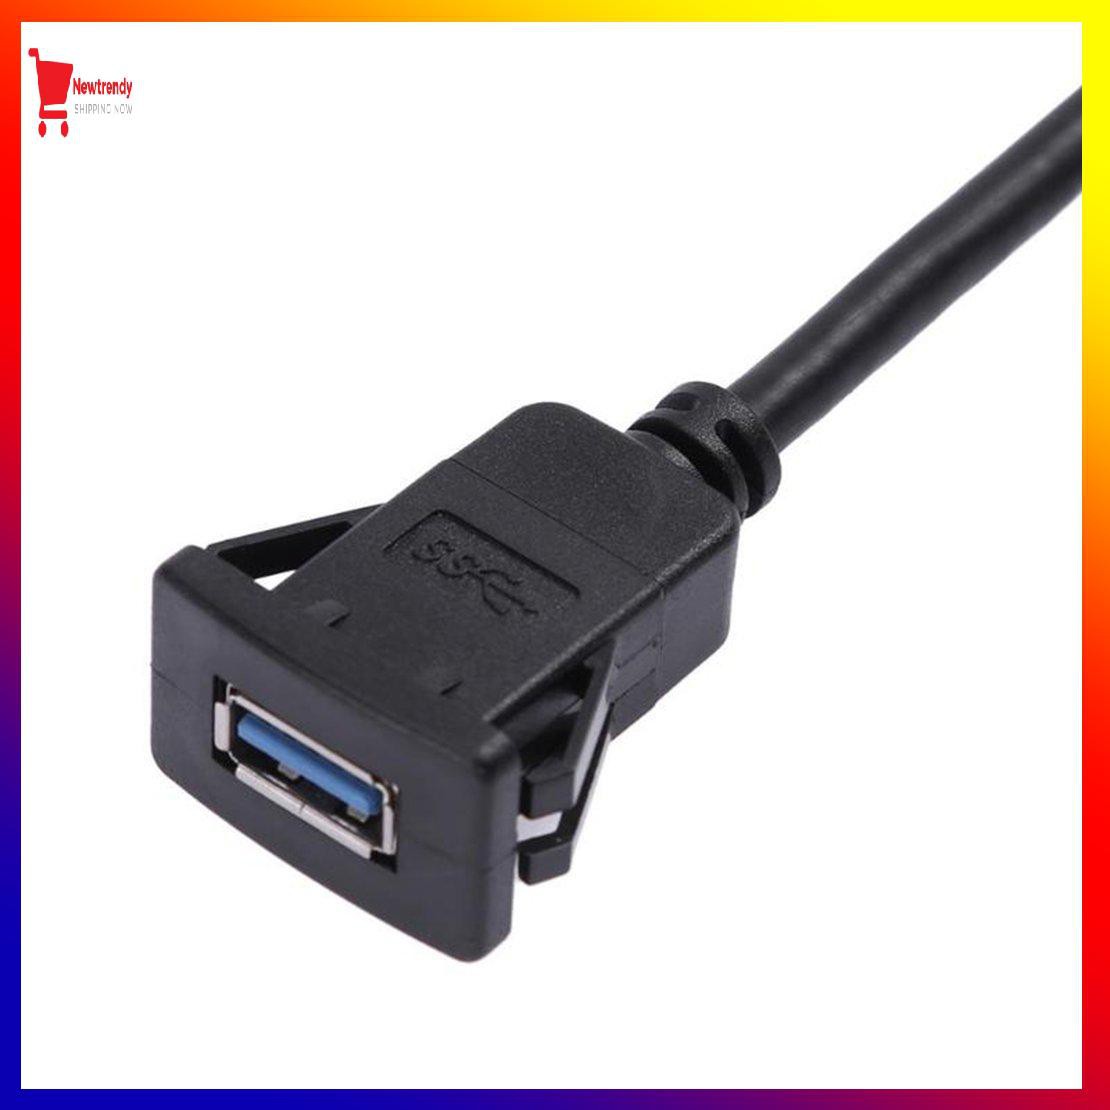 Dây cáp chuyển đổi cổng USB A sang USB A 1m/ ft chuyên dụng cho xe hơi [311]